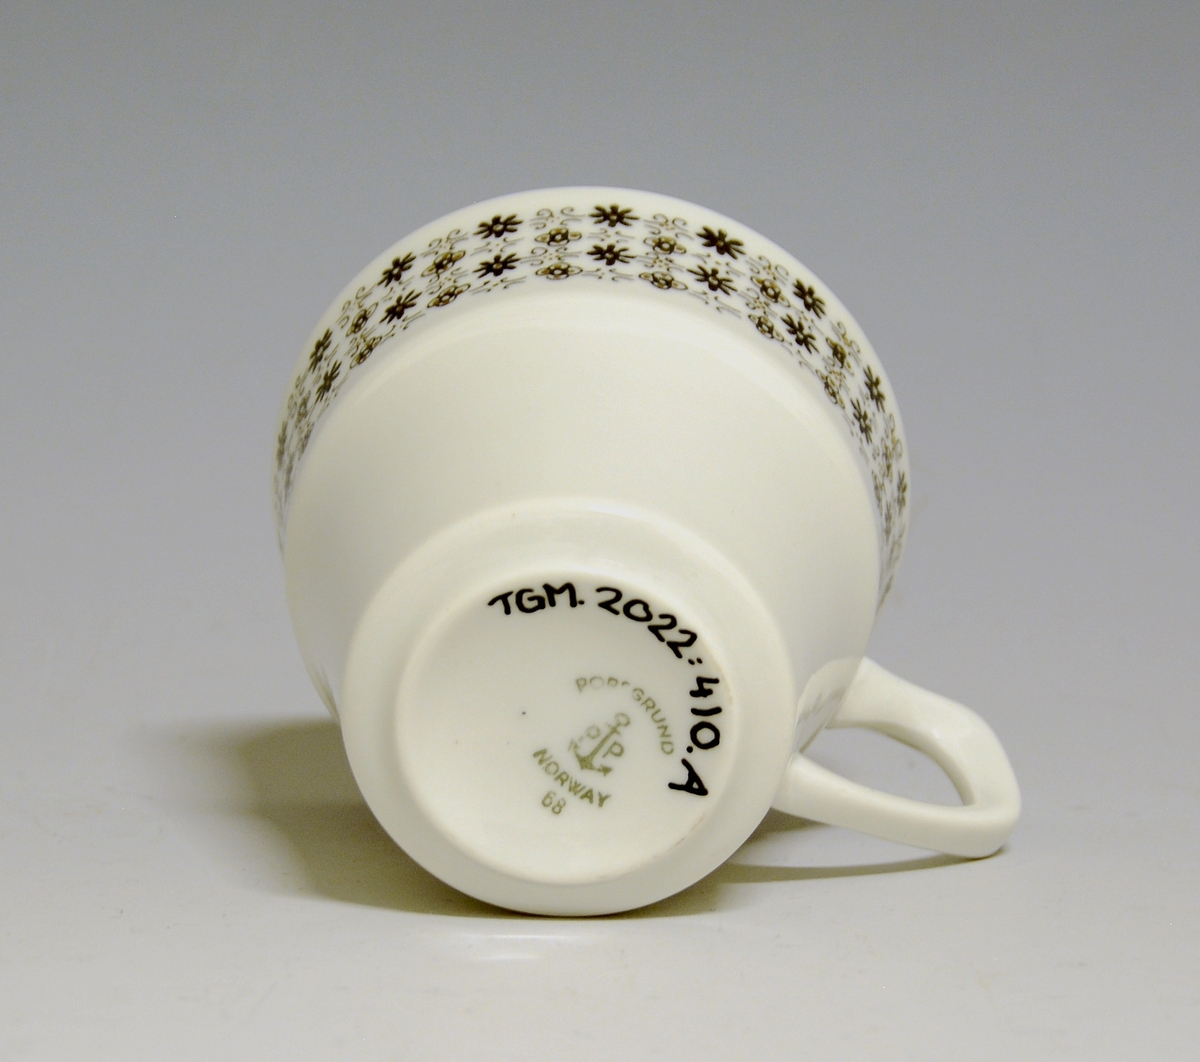 Kaffekopp av porselen med hvit glasur og bord med småblomstret trykkdekor i sort og gull i øvre del av korpus.
Modell: Petita (eller variant av)
